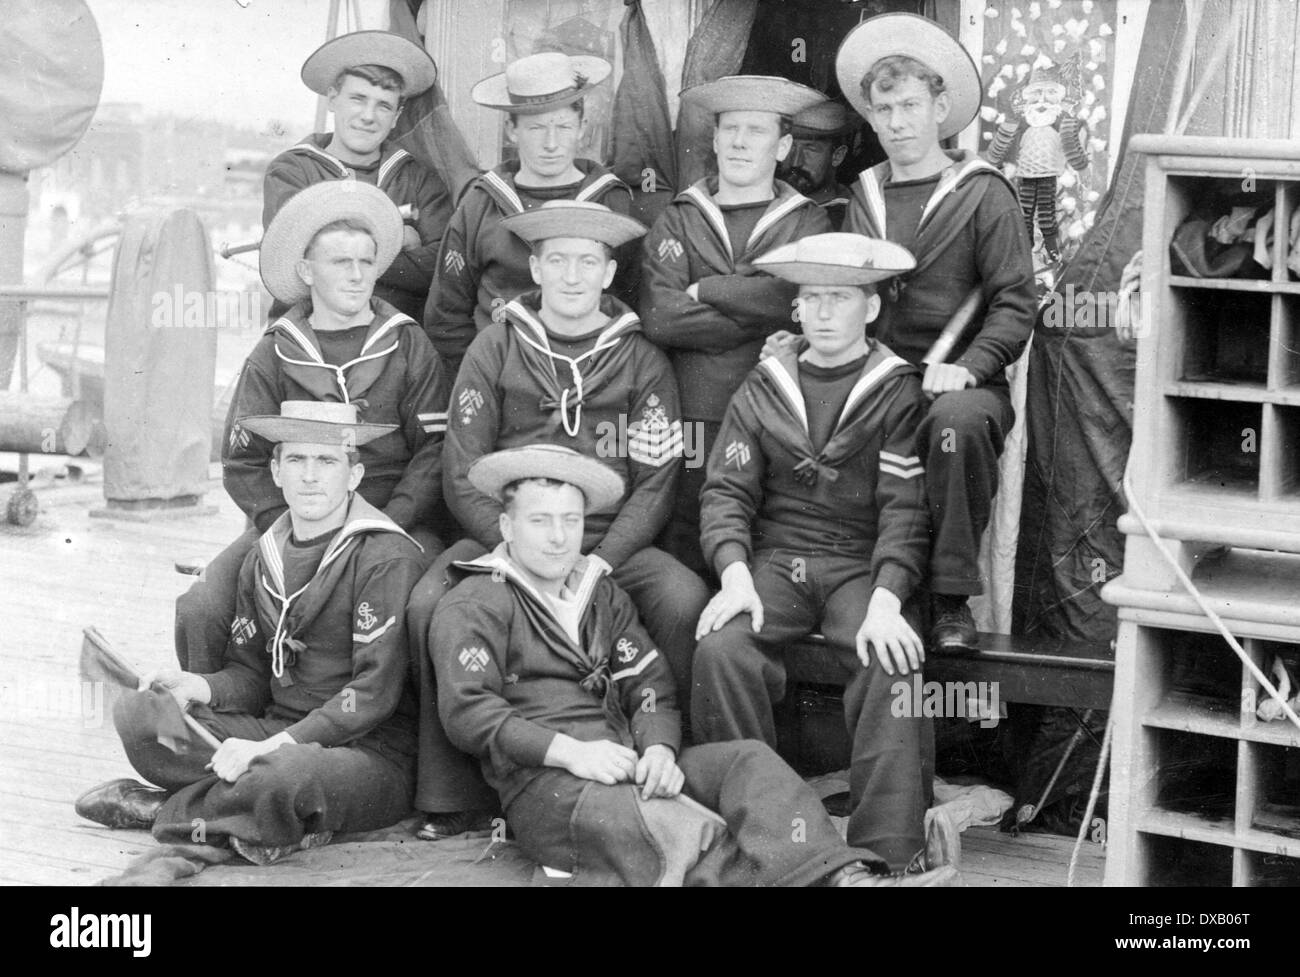 Les marins de la Marine royale à l'époque victorienne dimanche meilleur uniforme Banque D'Images